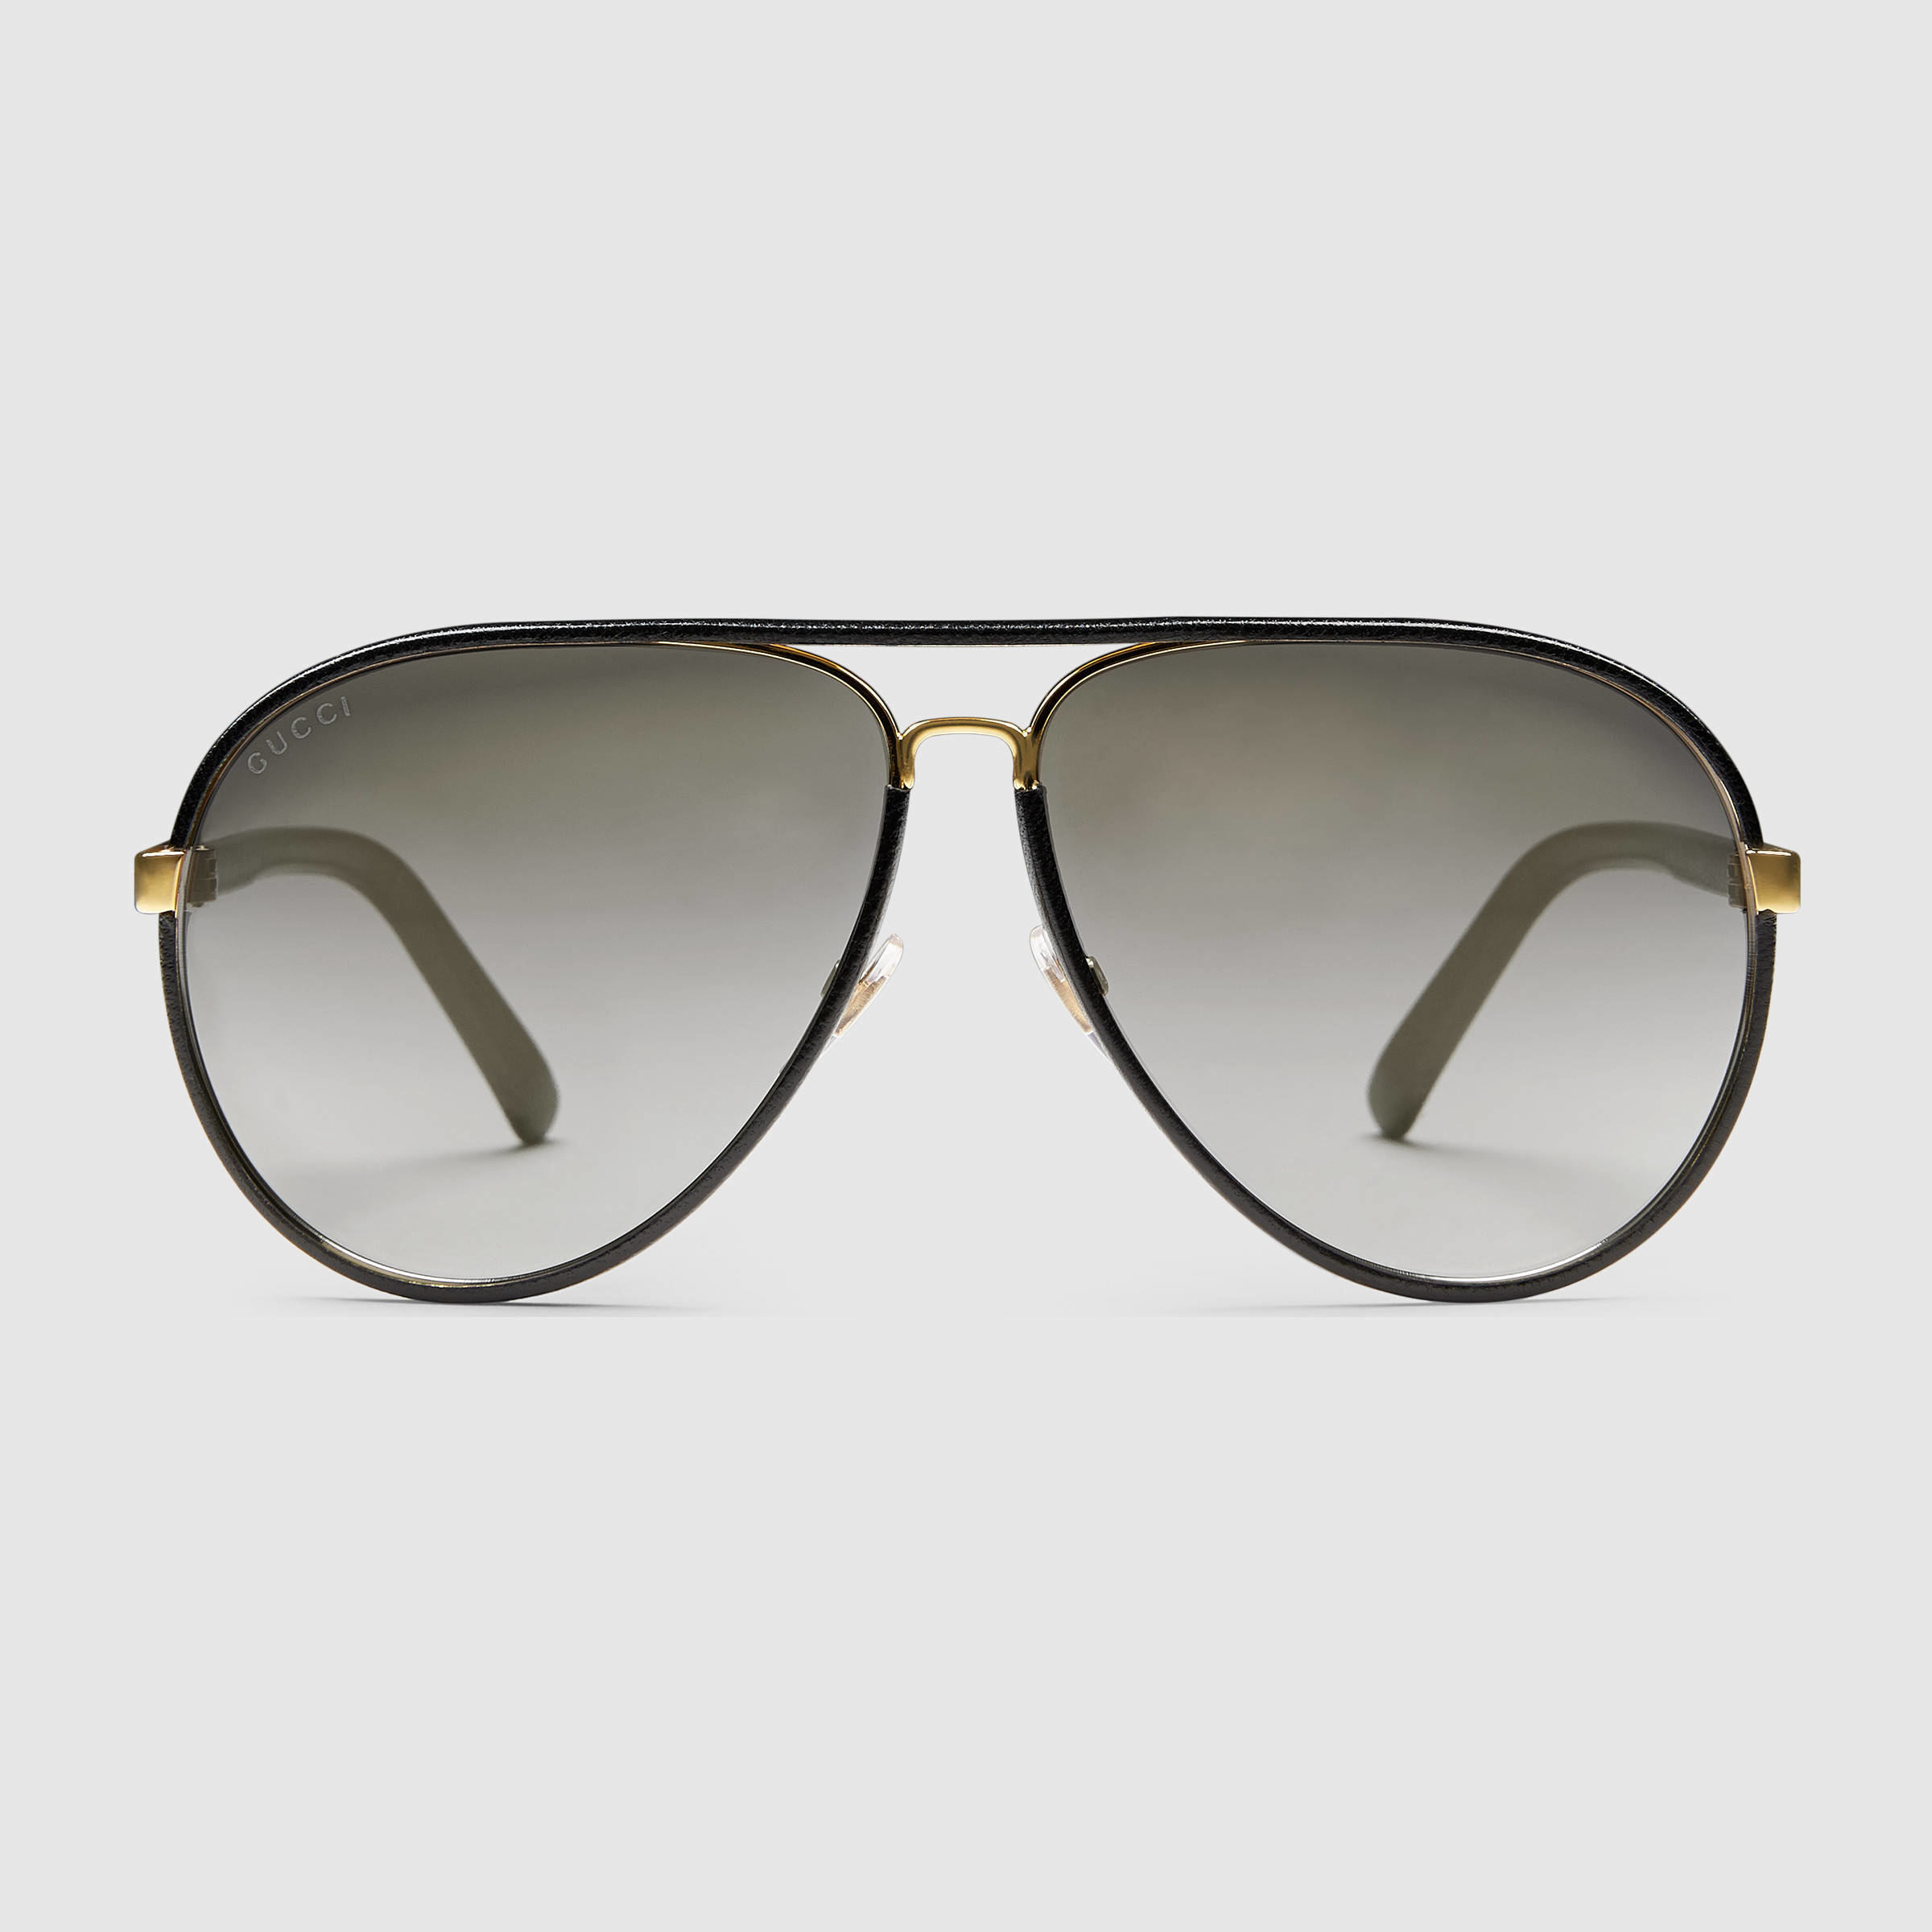 Gucci Leather Aviator Sunglasses in 